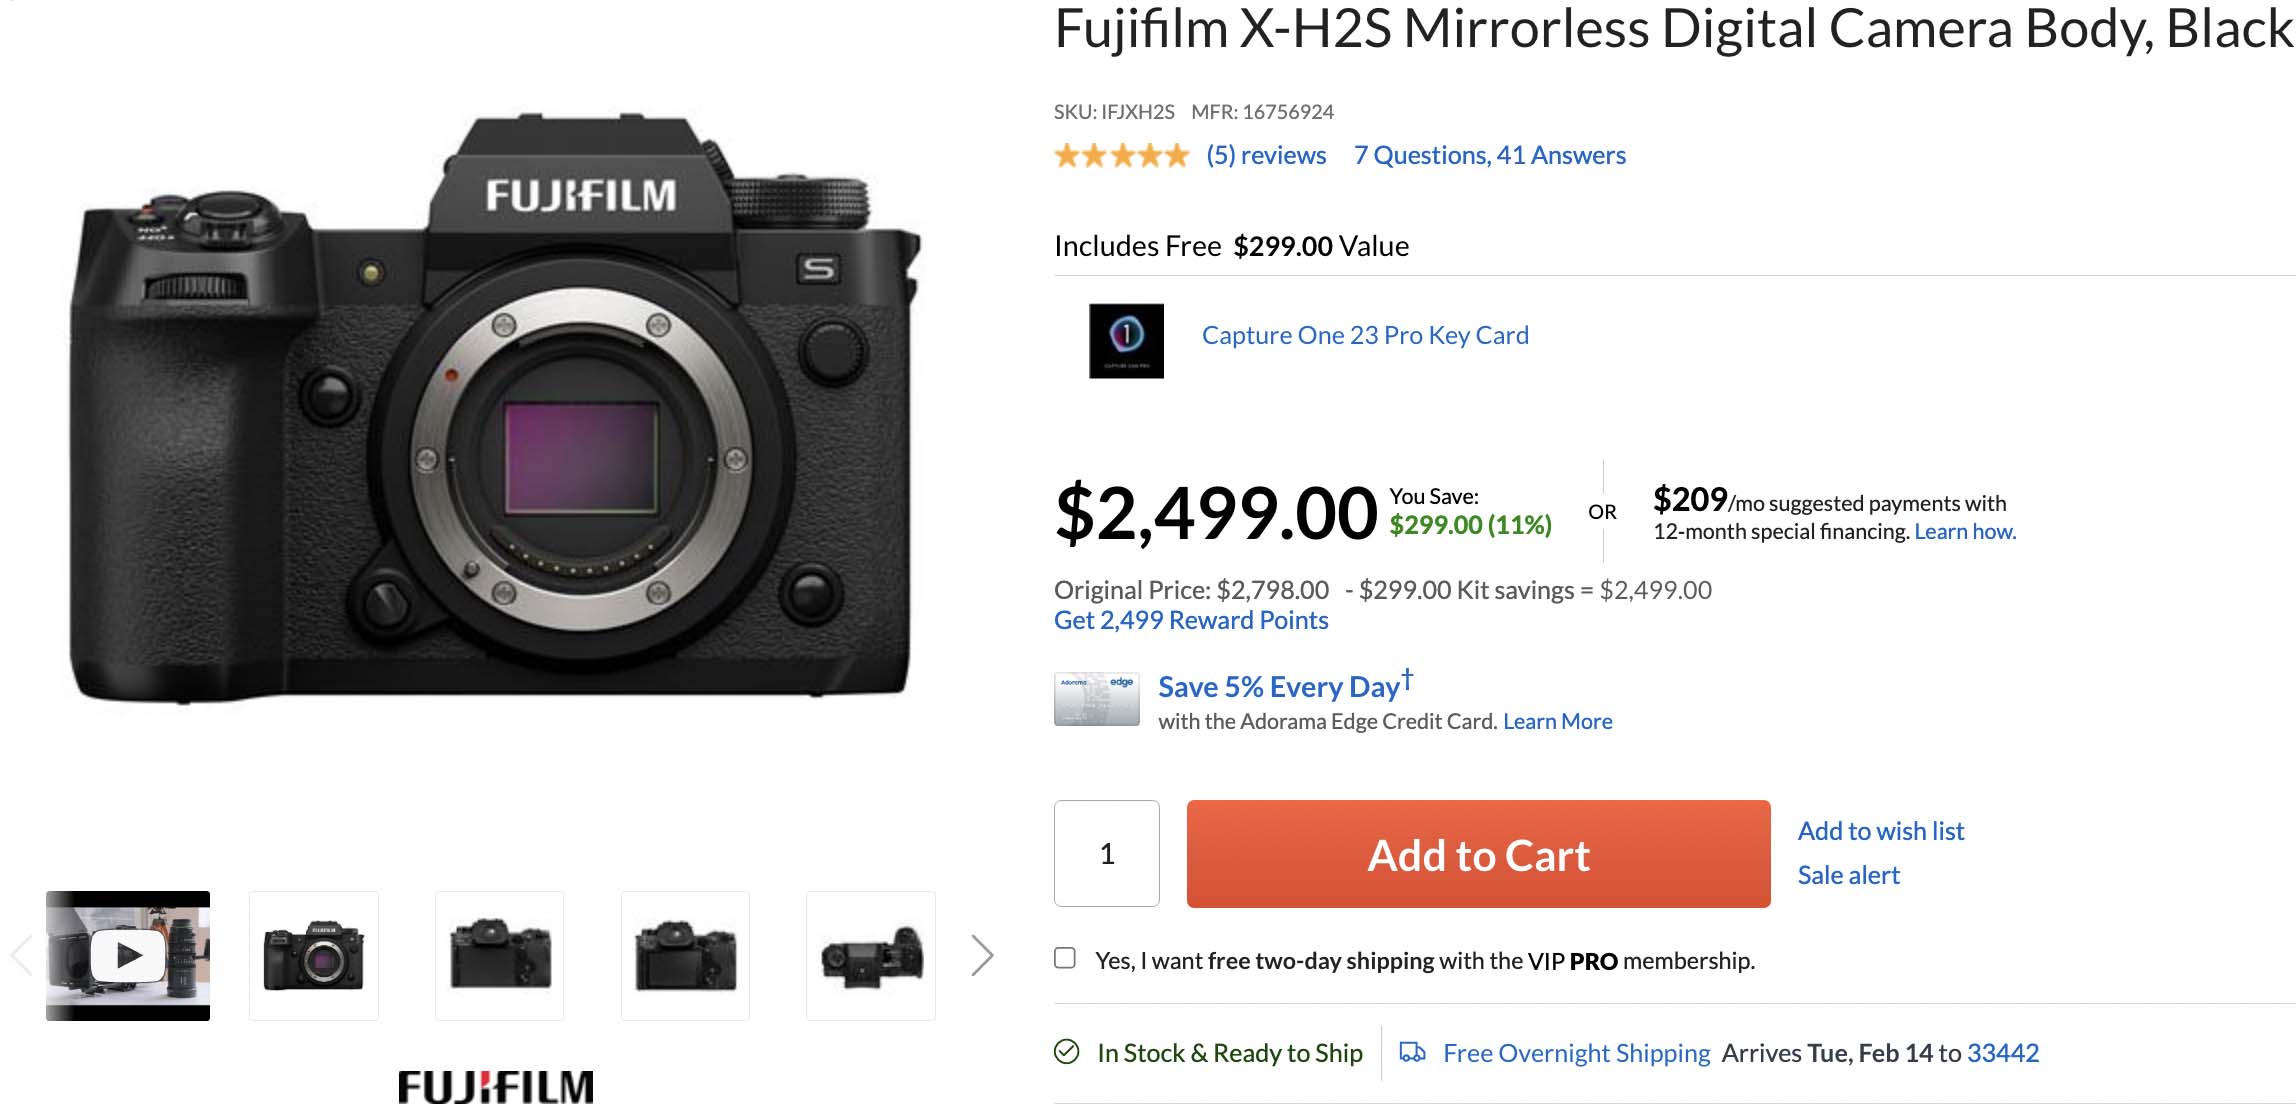 Buy Fujifilm X-H2S Get Capture One Pro Free - Fuji Addict